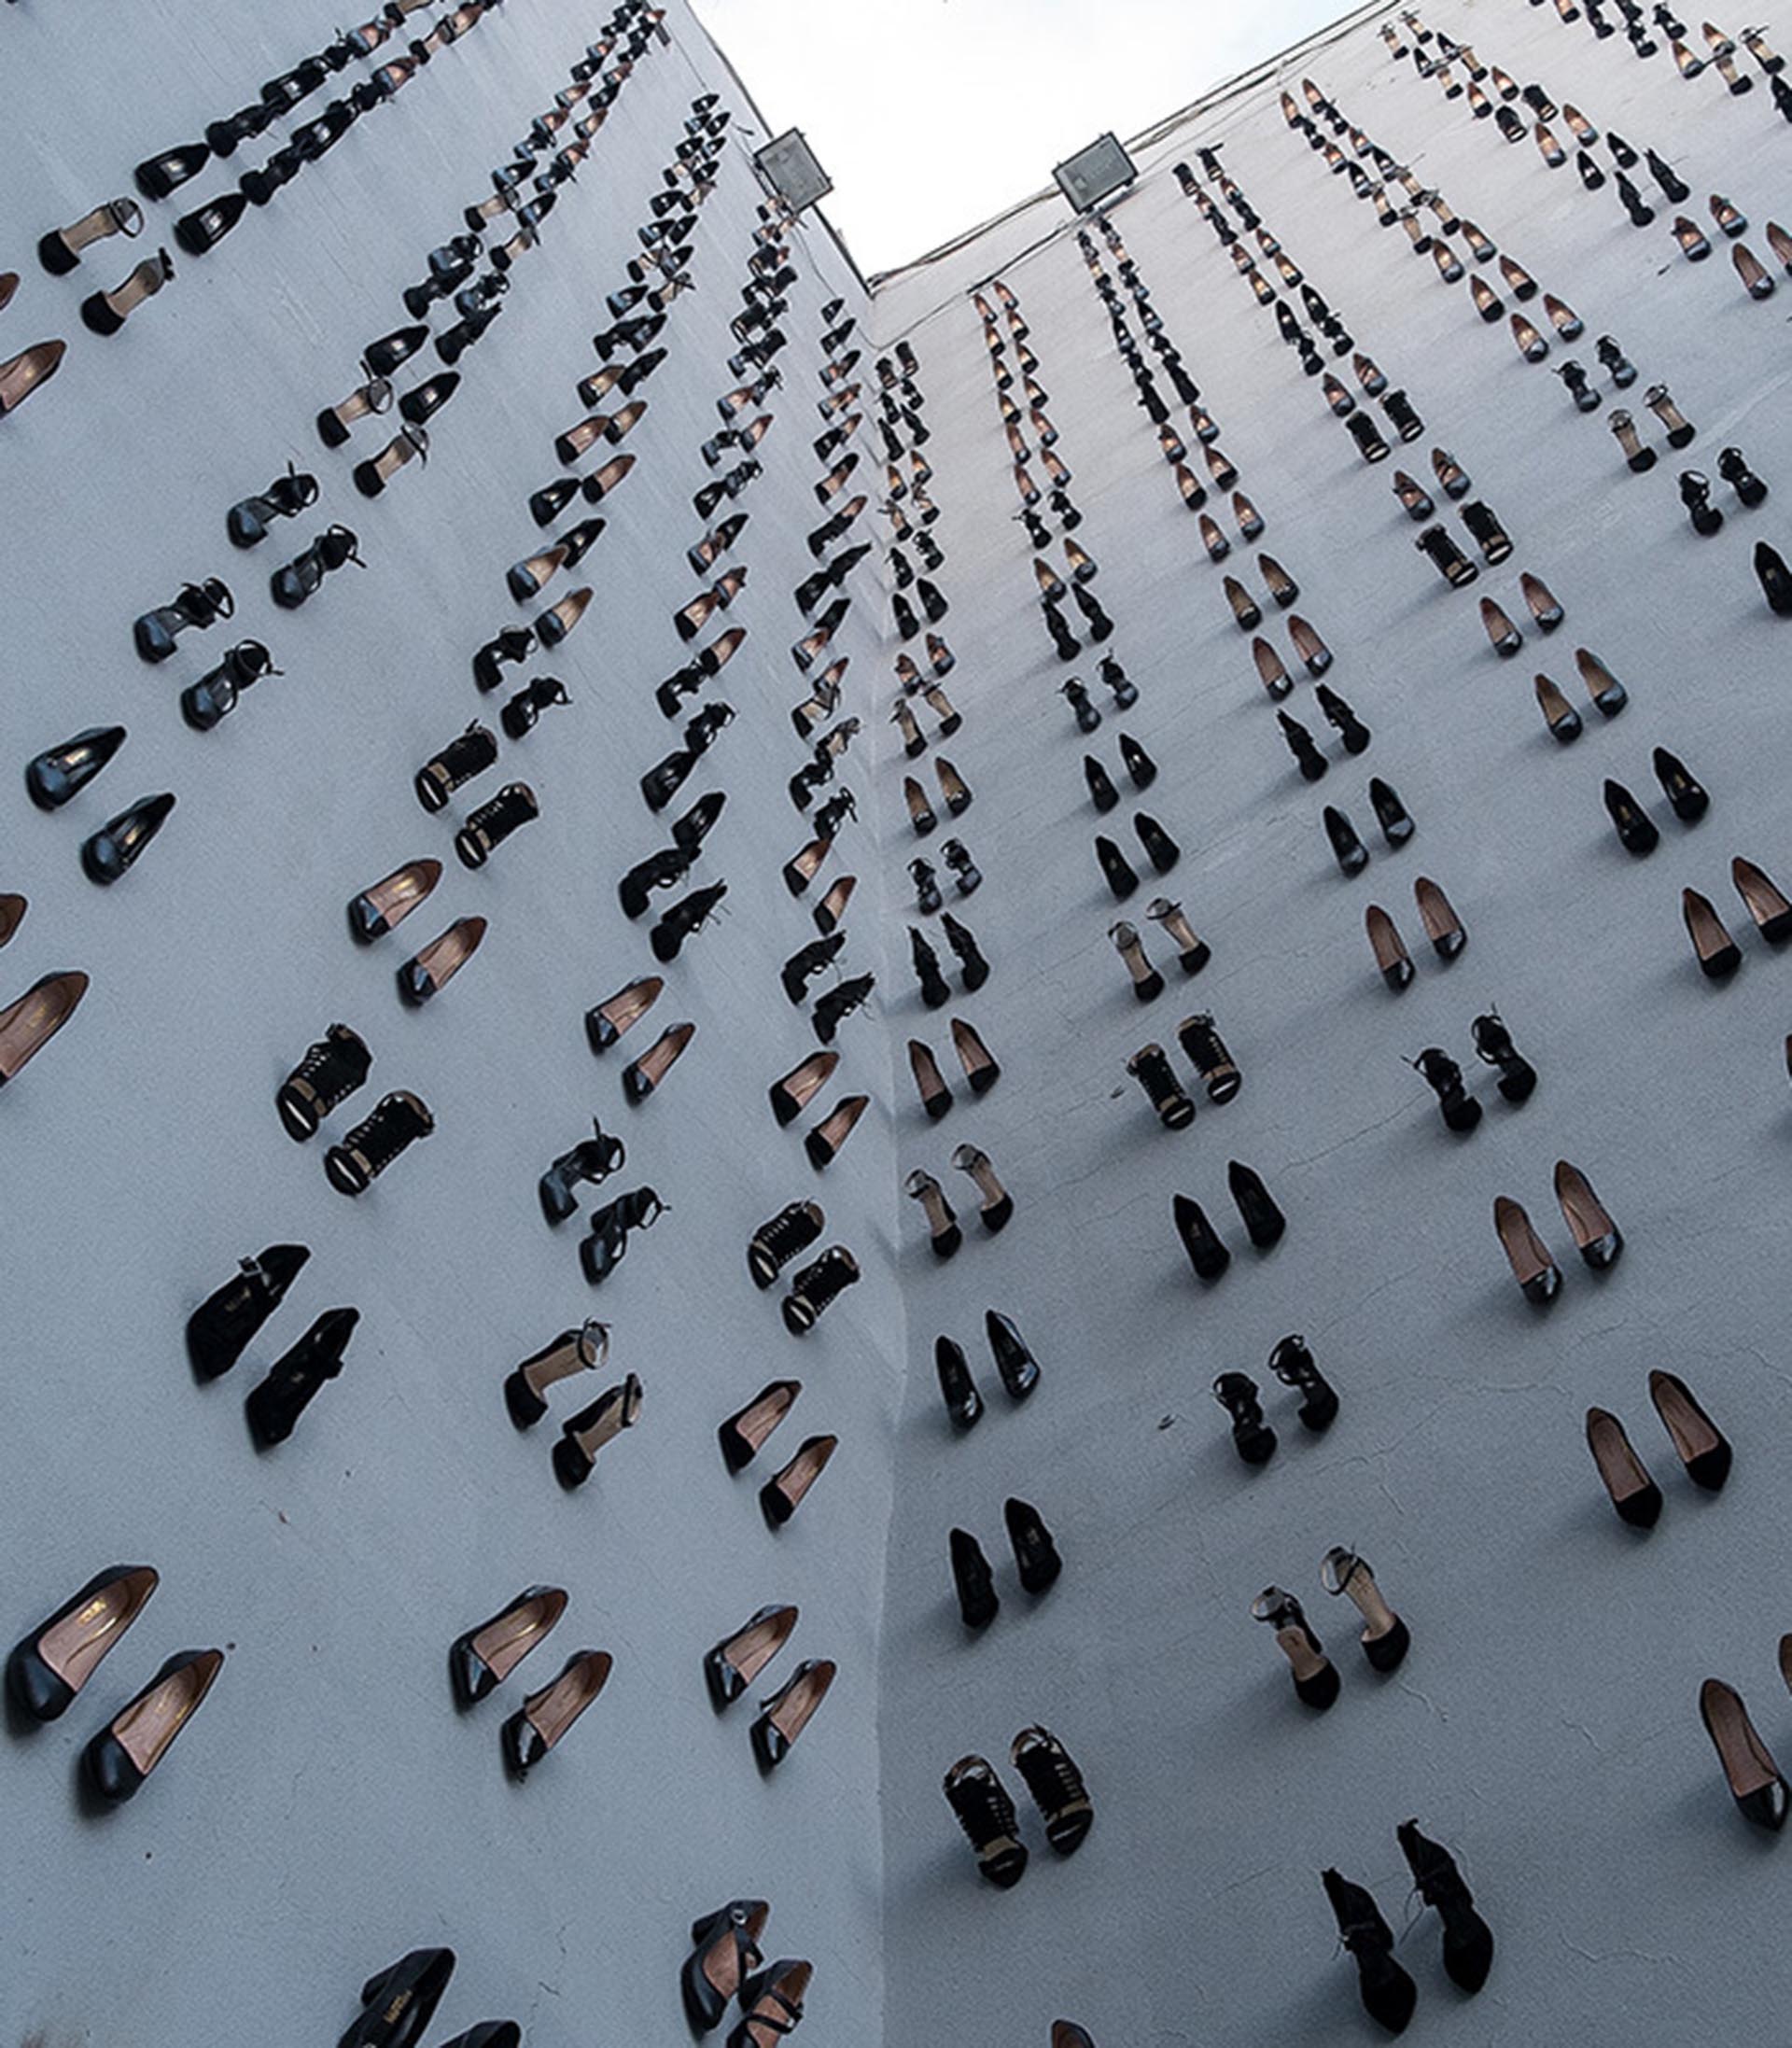 El artista Atún Vahit creó un memorial colgando 440 pares de zapatos en las paredes de un edificio en Estambul para denunciar el número de mujeres asesinadas por hombres en 2018 en Turquía. (Foto: Flufoto / Yanköşe)